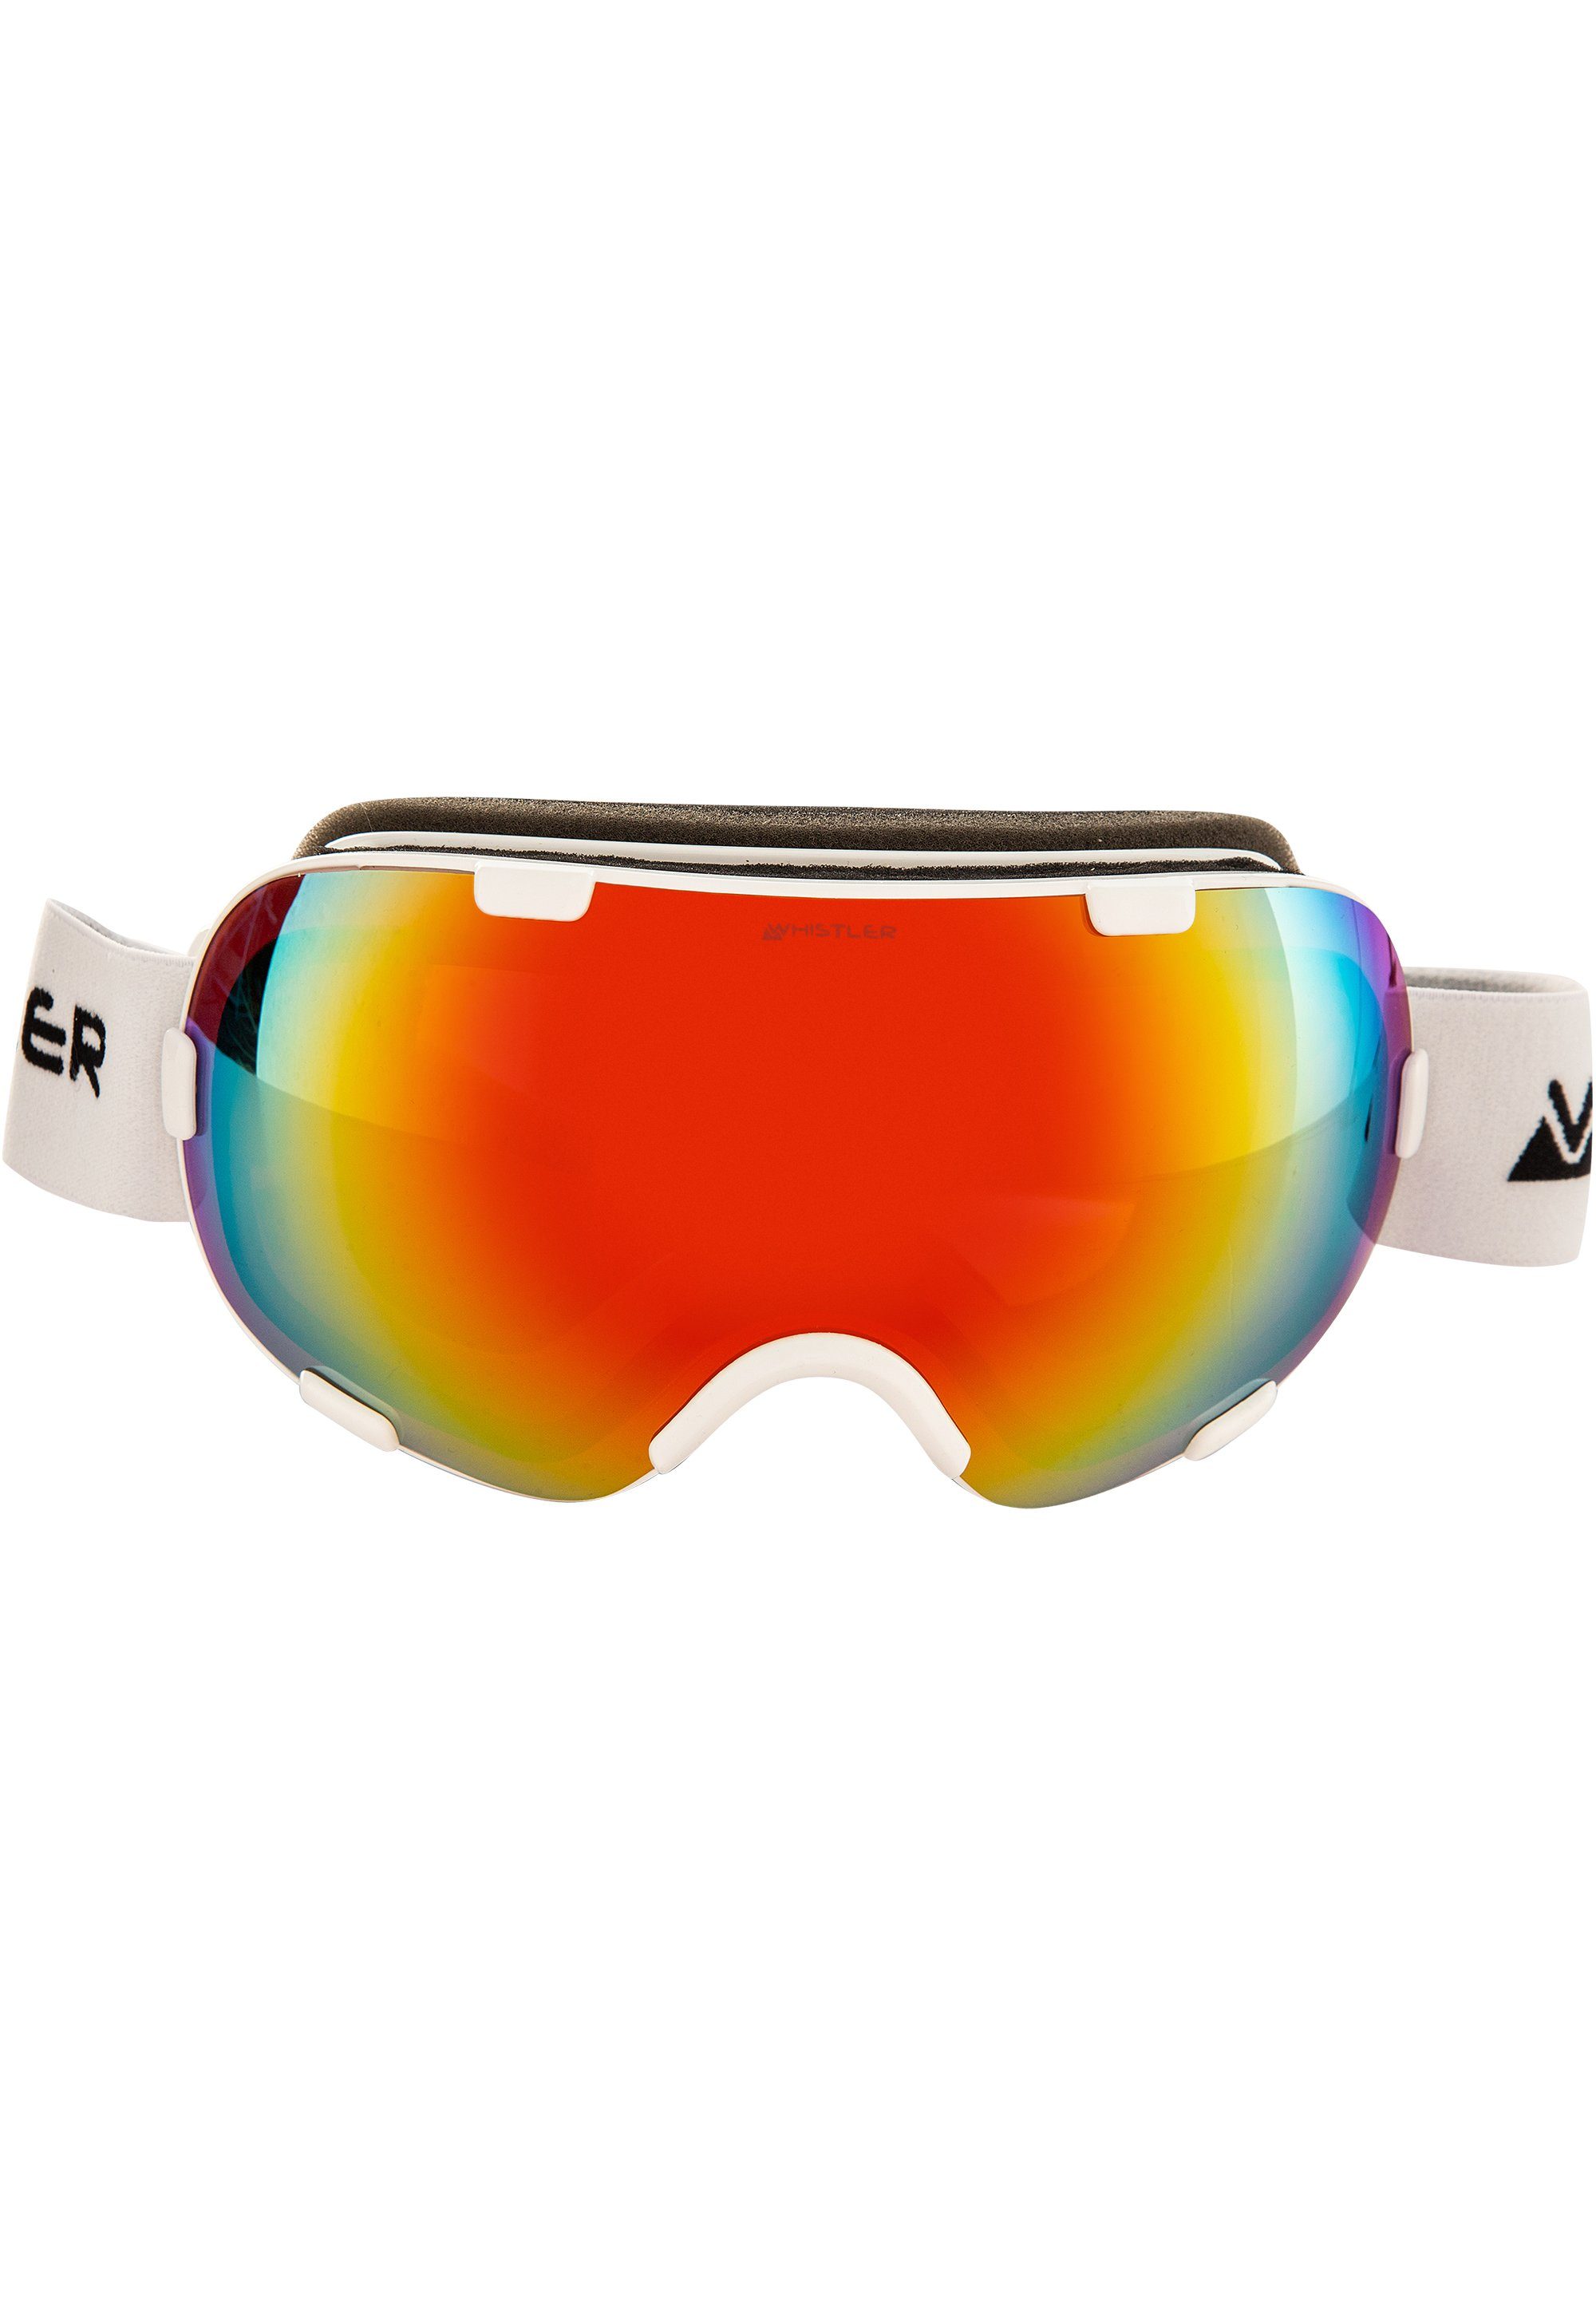 WHISTLER Skibrille WS6000 Ski Goggle, mit hochwertiger  Anti-Beschlag-Beschichtung